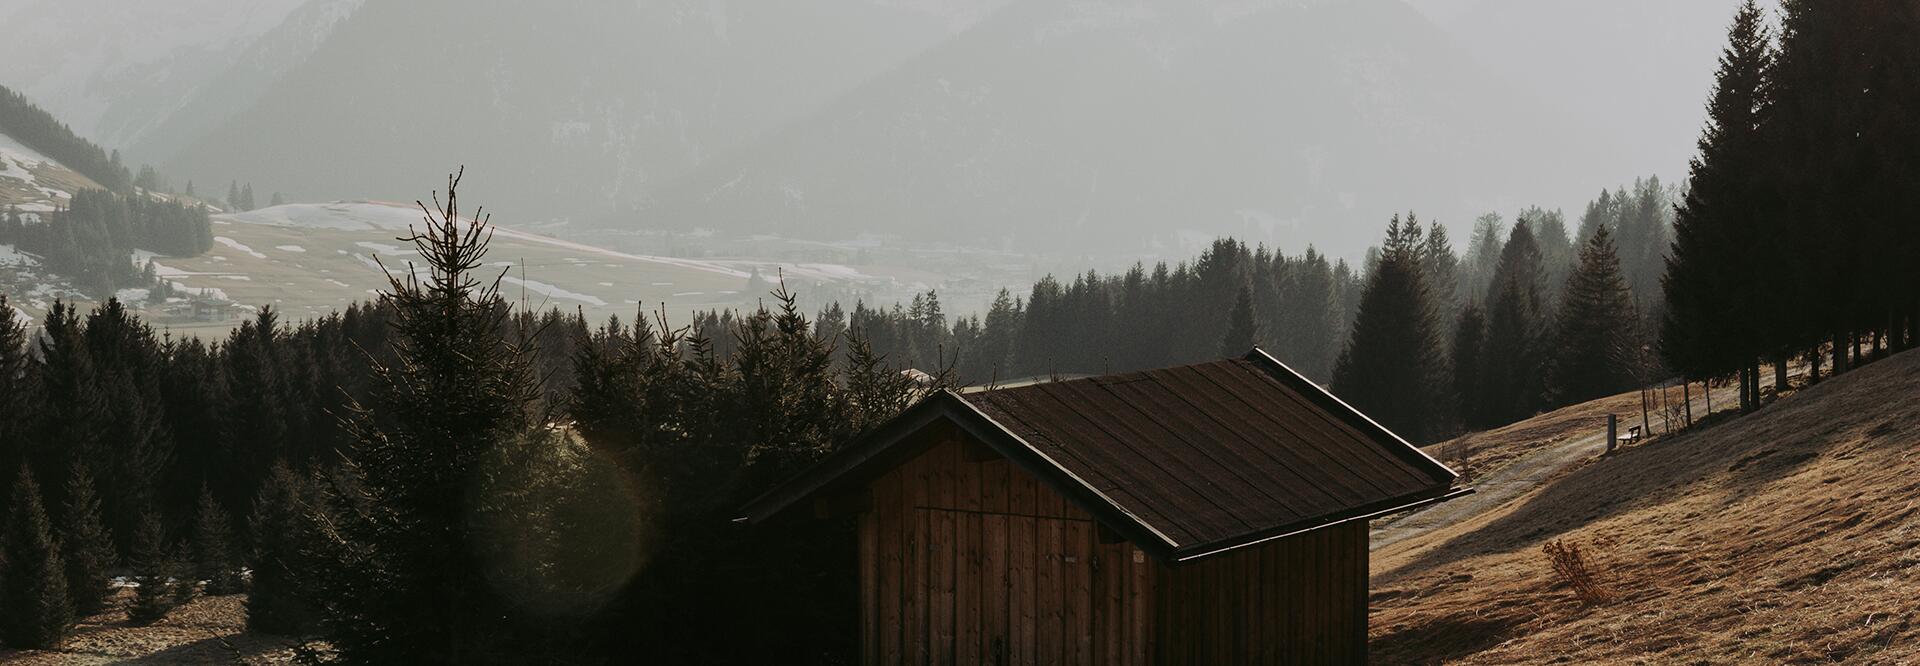 Frühling in den Bergen im Tannheimer Tal mit Holzhütte und schneebedeckten Gipfeln | Der Engel in Tirol